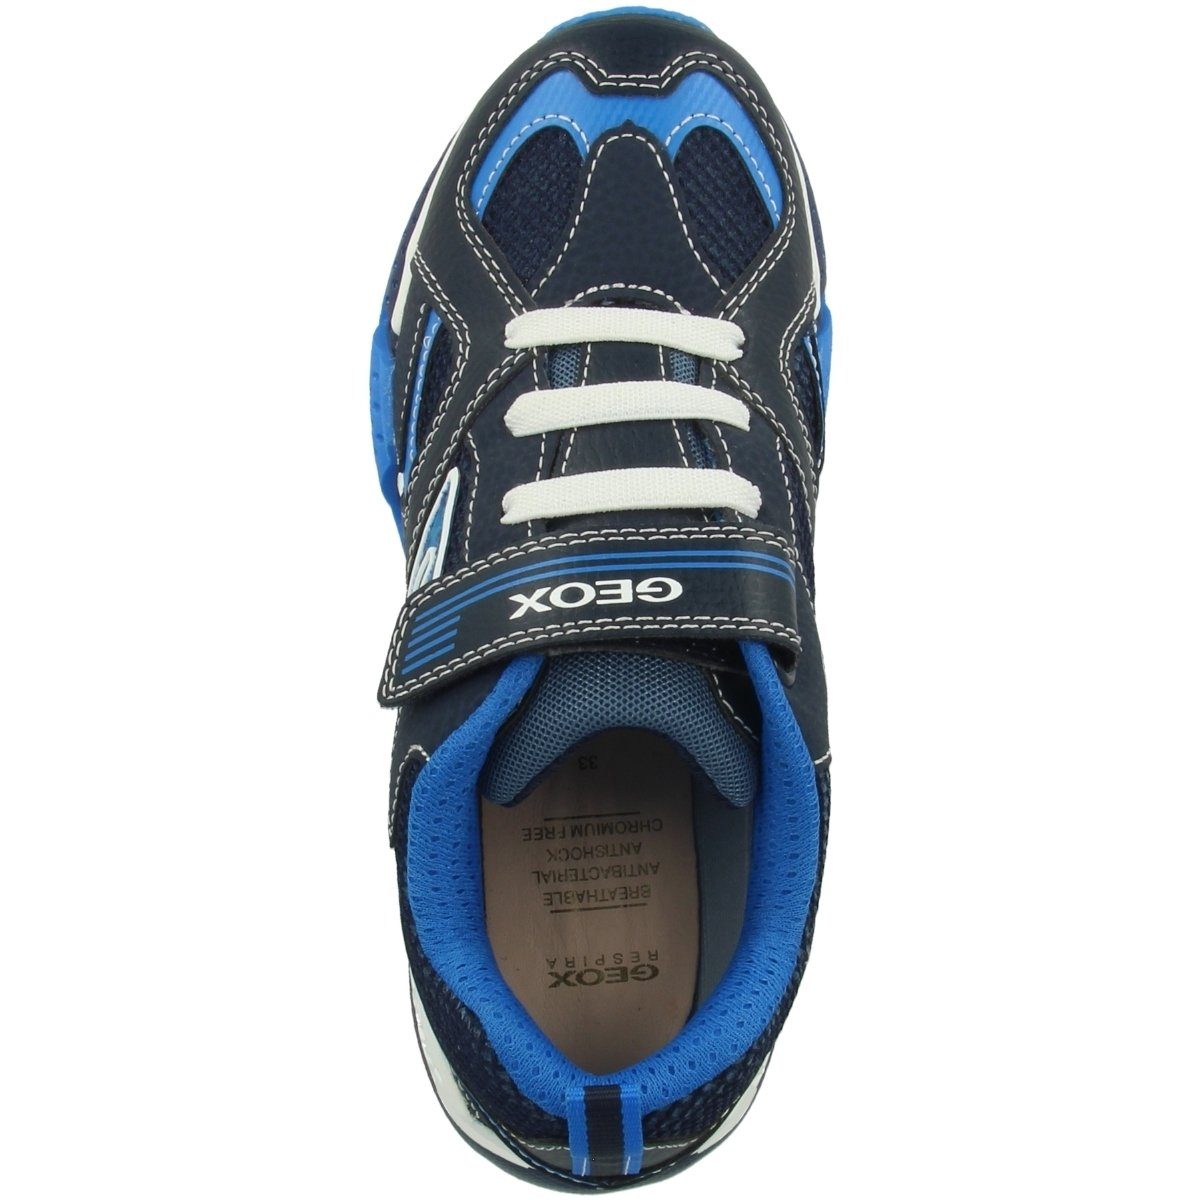 A Unisex Funktion Geox B. blau Kinder Sneaker Bayonyc LED J